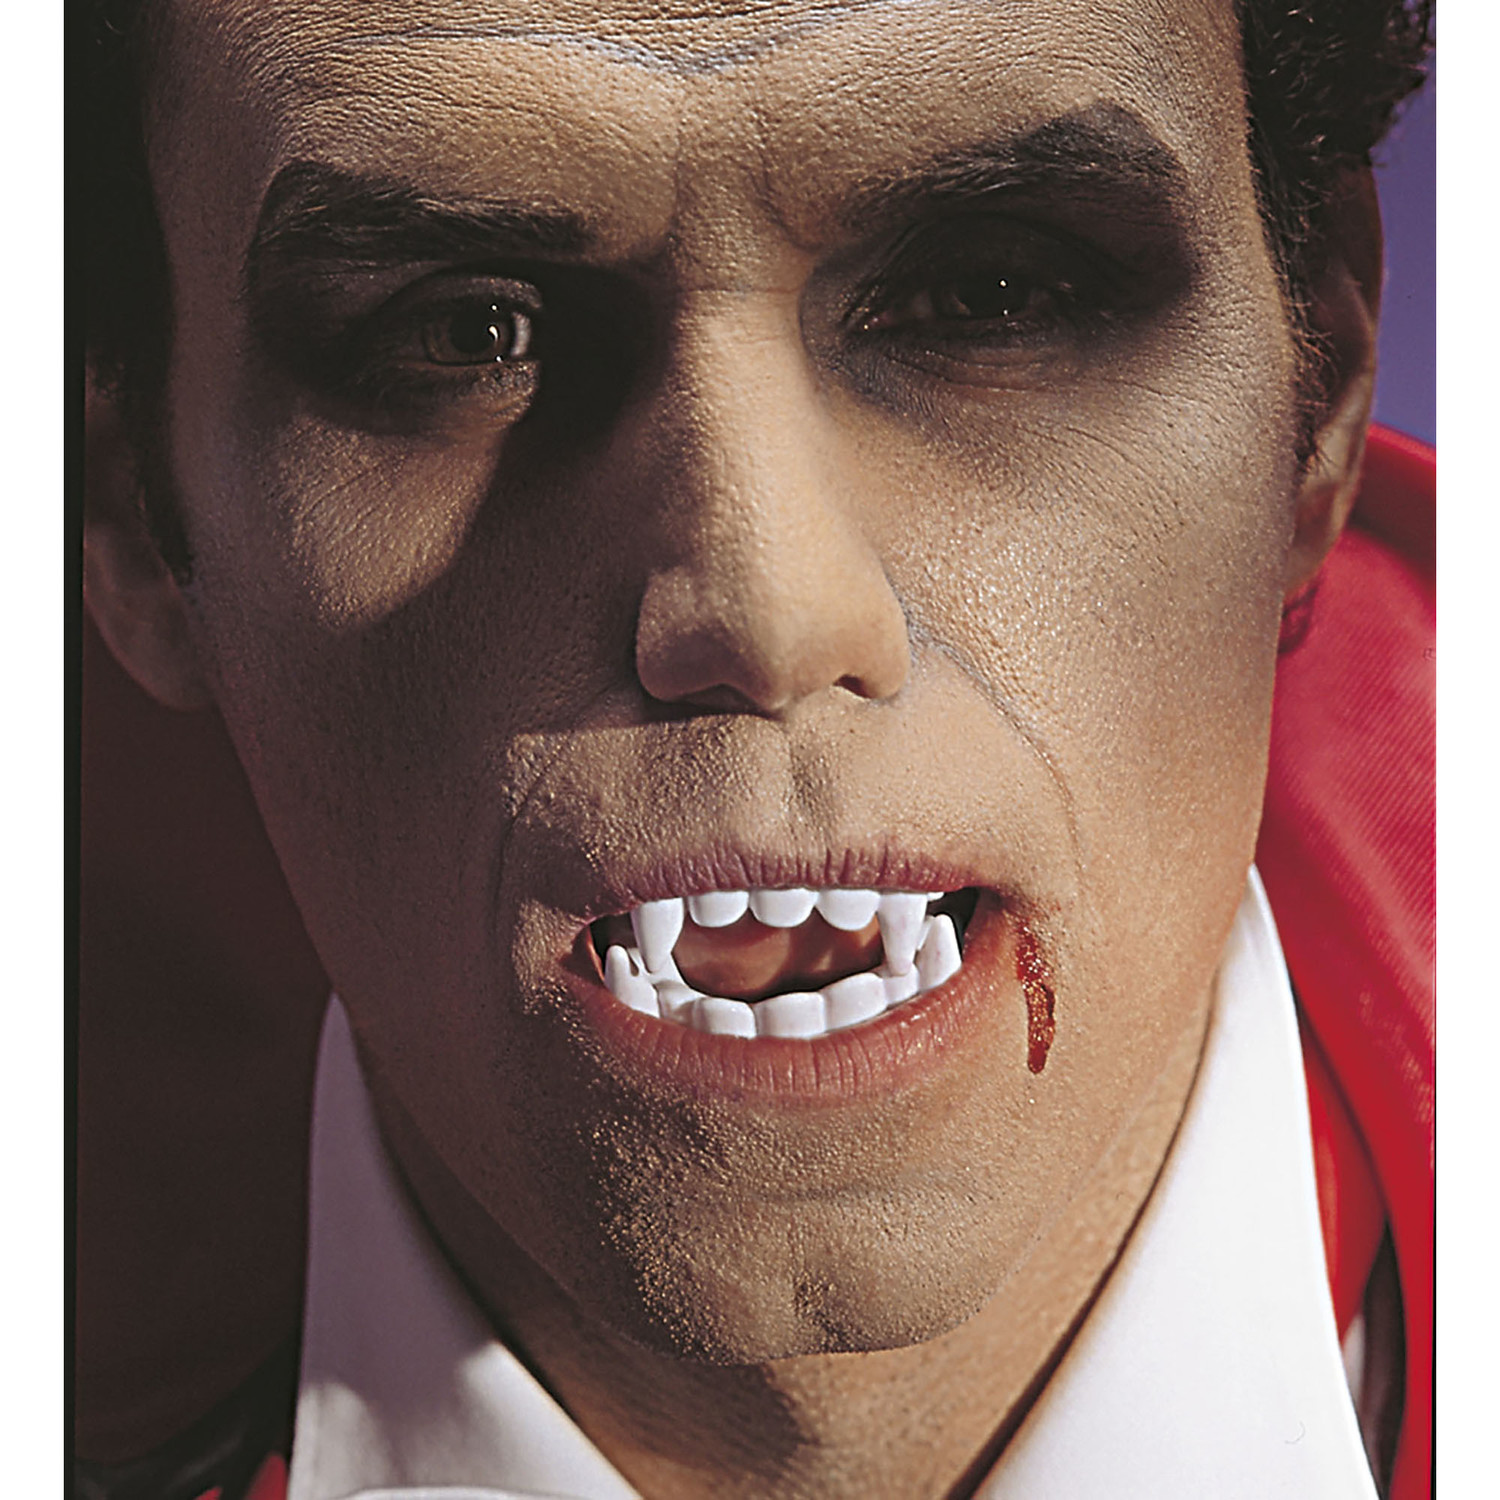 Carnavalsartikelen: Vampier of Dracula gebitje